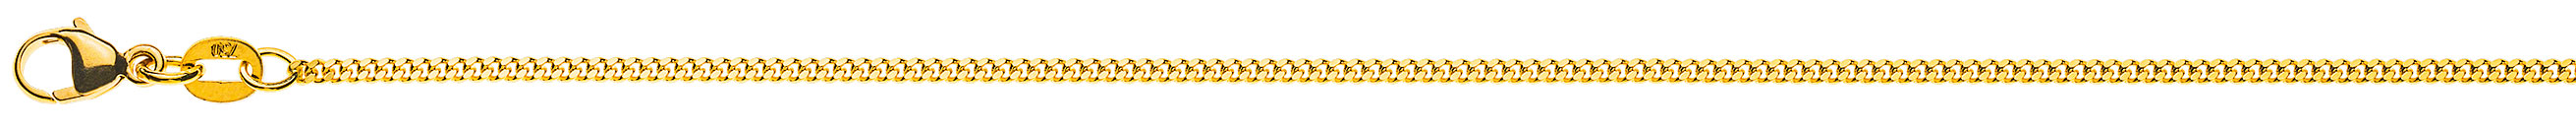 AURONOS Prestige Halskette Gelbgold 18K Panzerkette geschliffen 42cm 1.6mm